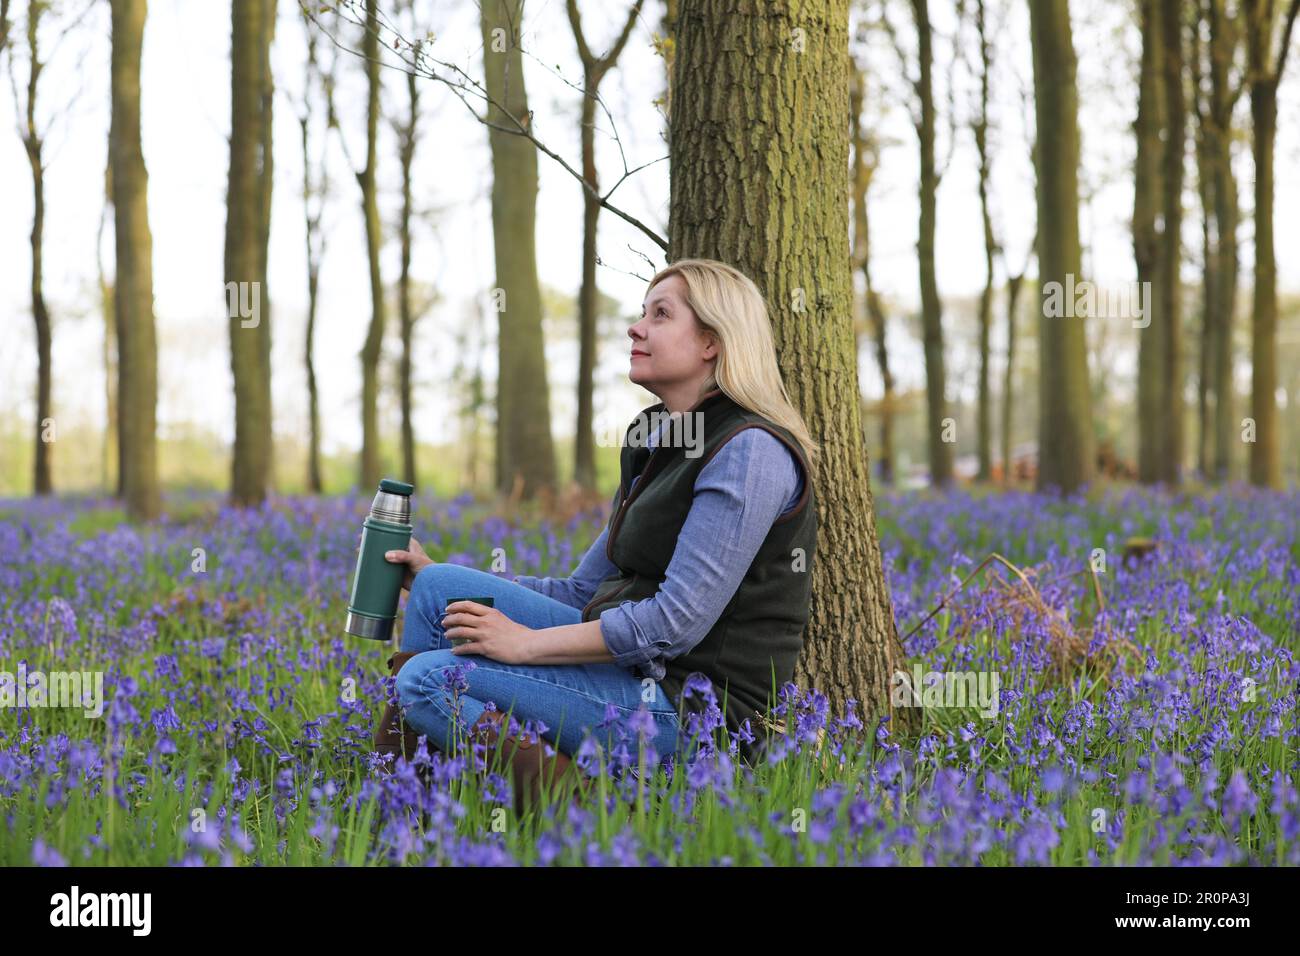 Eine Frau, die in einem Bluebell-Holz sitzt und eine Flasche und einen Becher hält Stockfoto